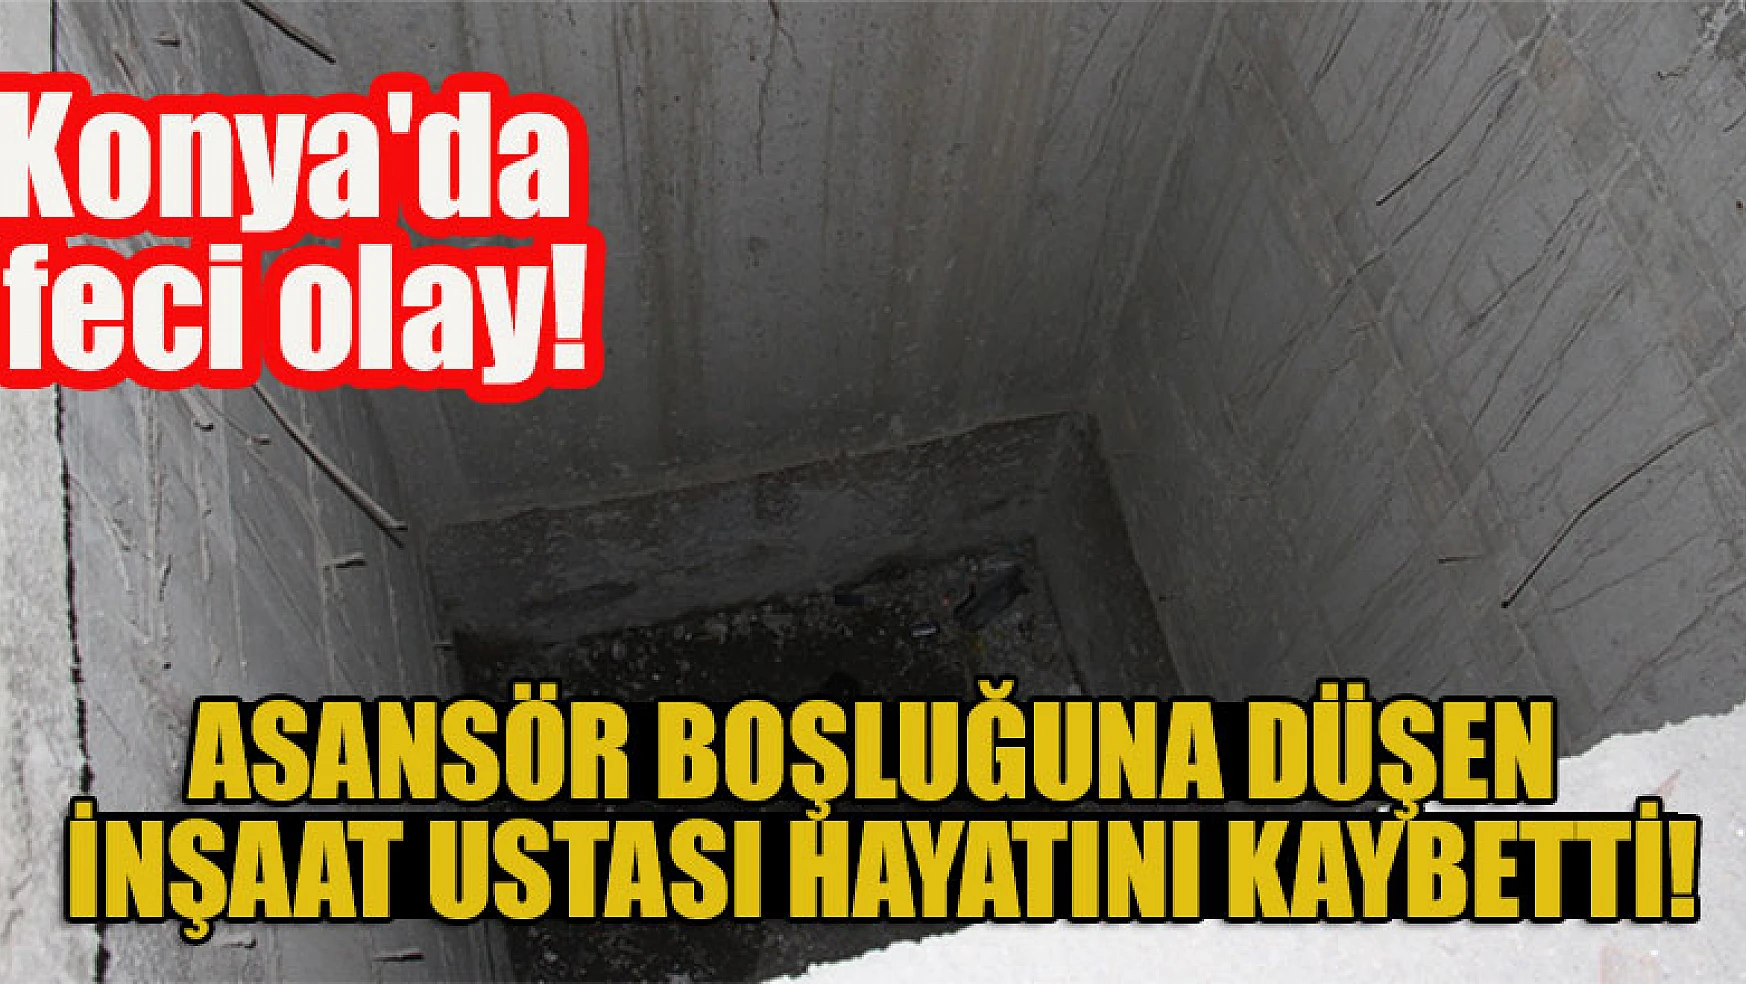 Konya'da feci olay! Asansör boşluğuna düşen inşaat ustası hayatını kaybetti